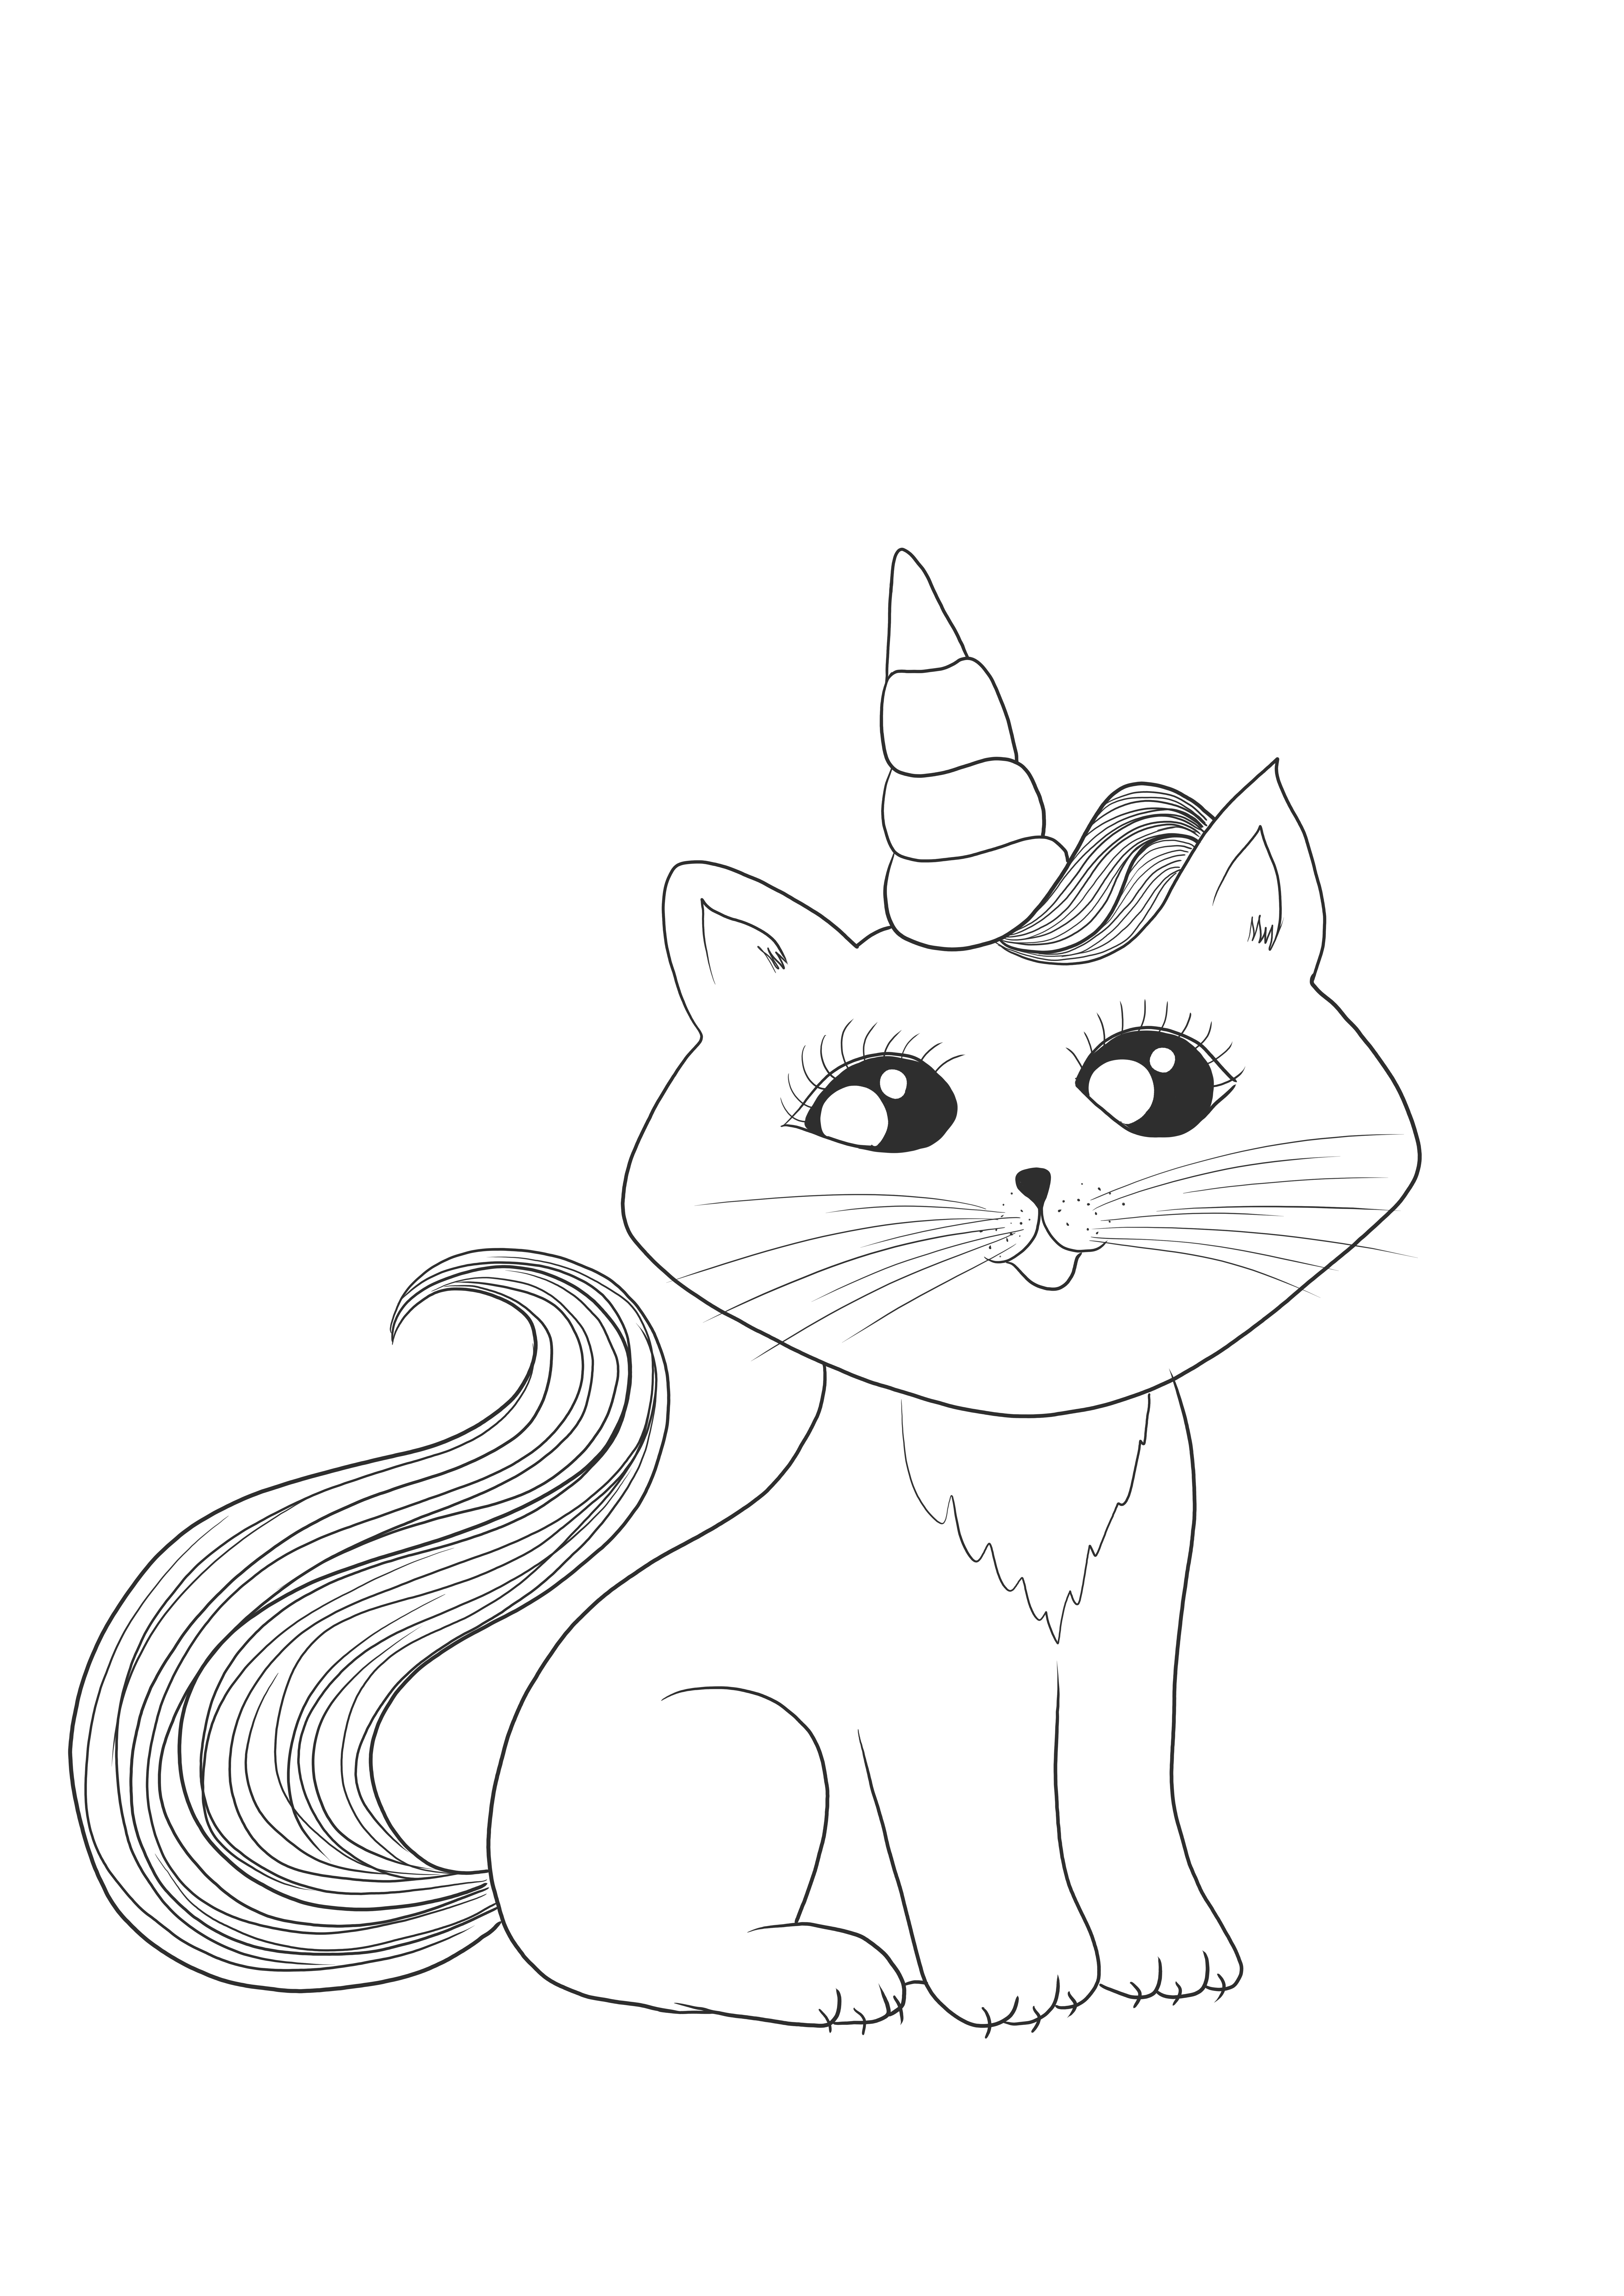 Grazioso gatto unicorno da colorare gratis da usare dopo averlo stampato